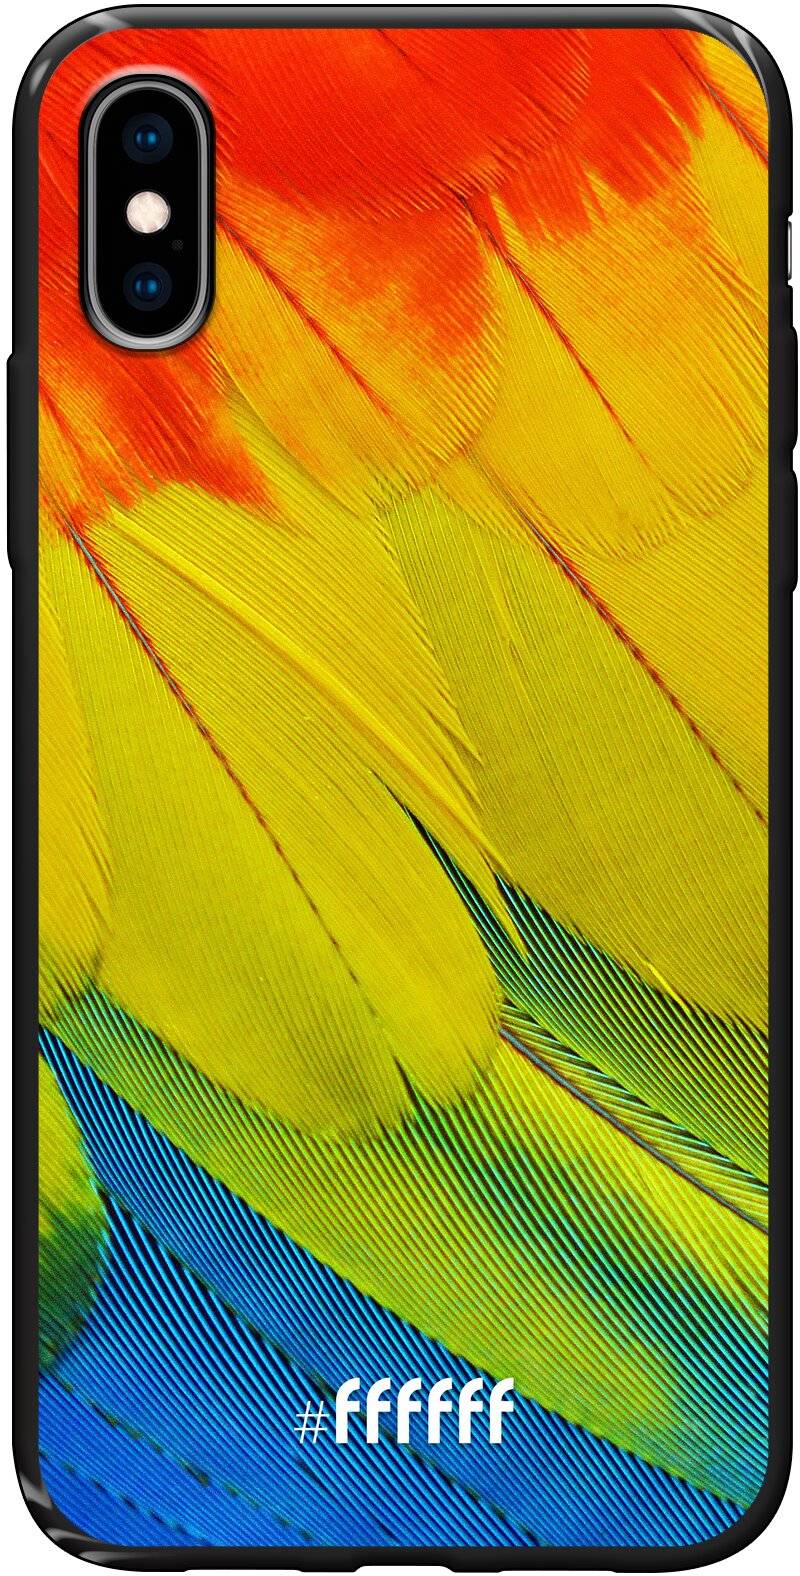 Macaw Hues iPhone X